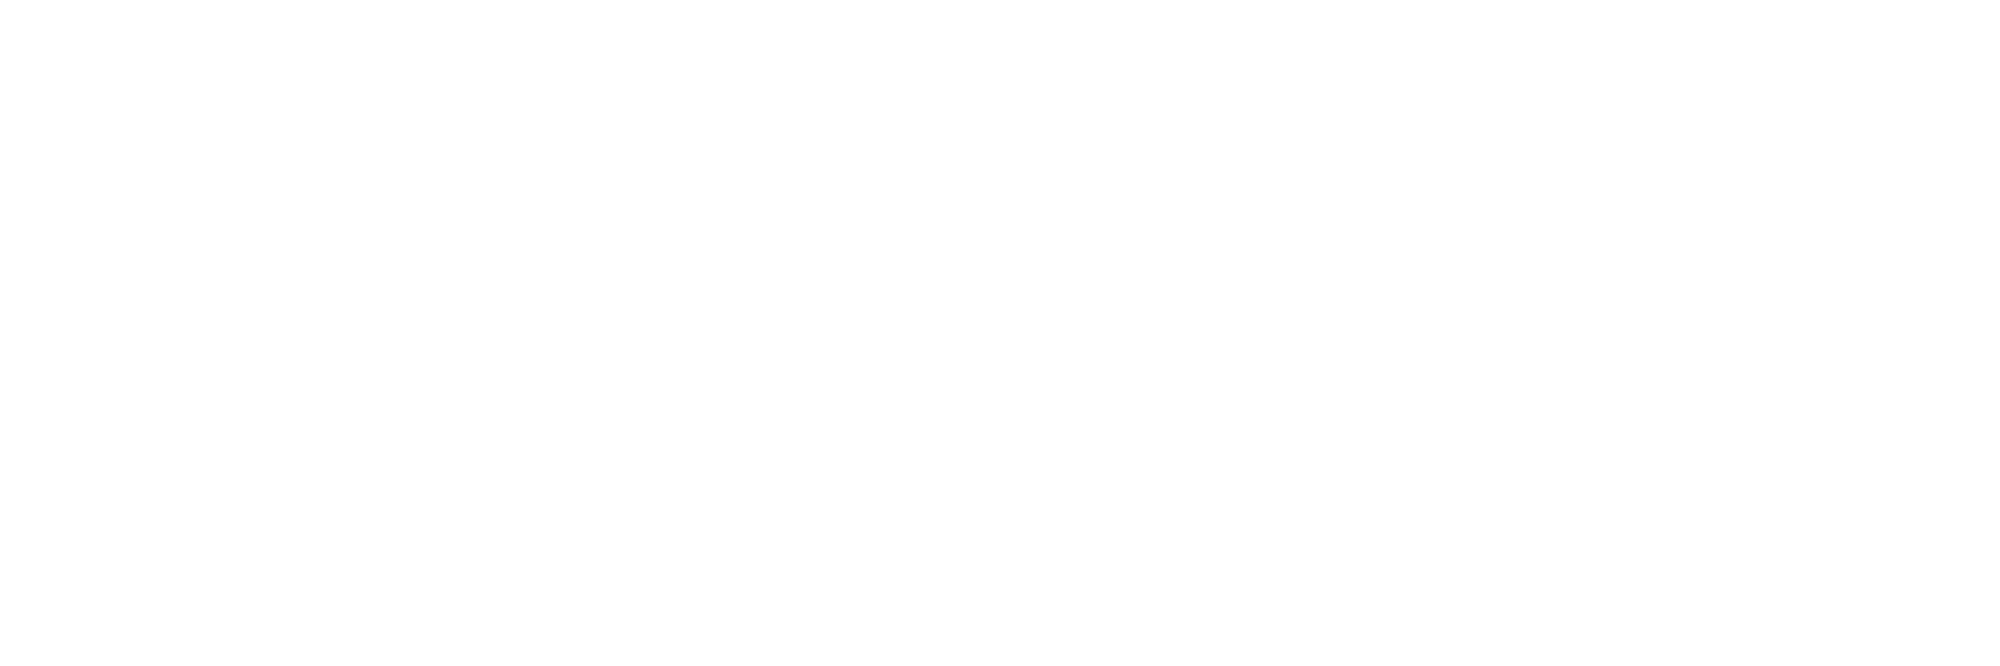 Libertas Estate Planning Logo